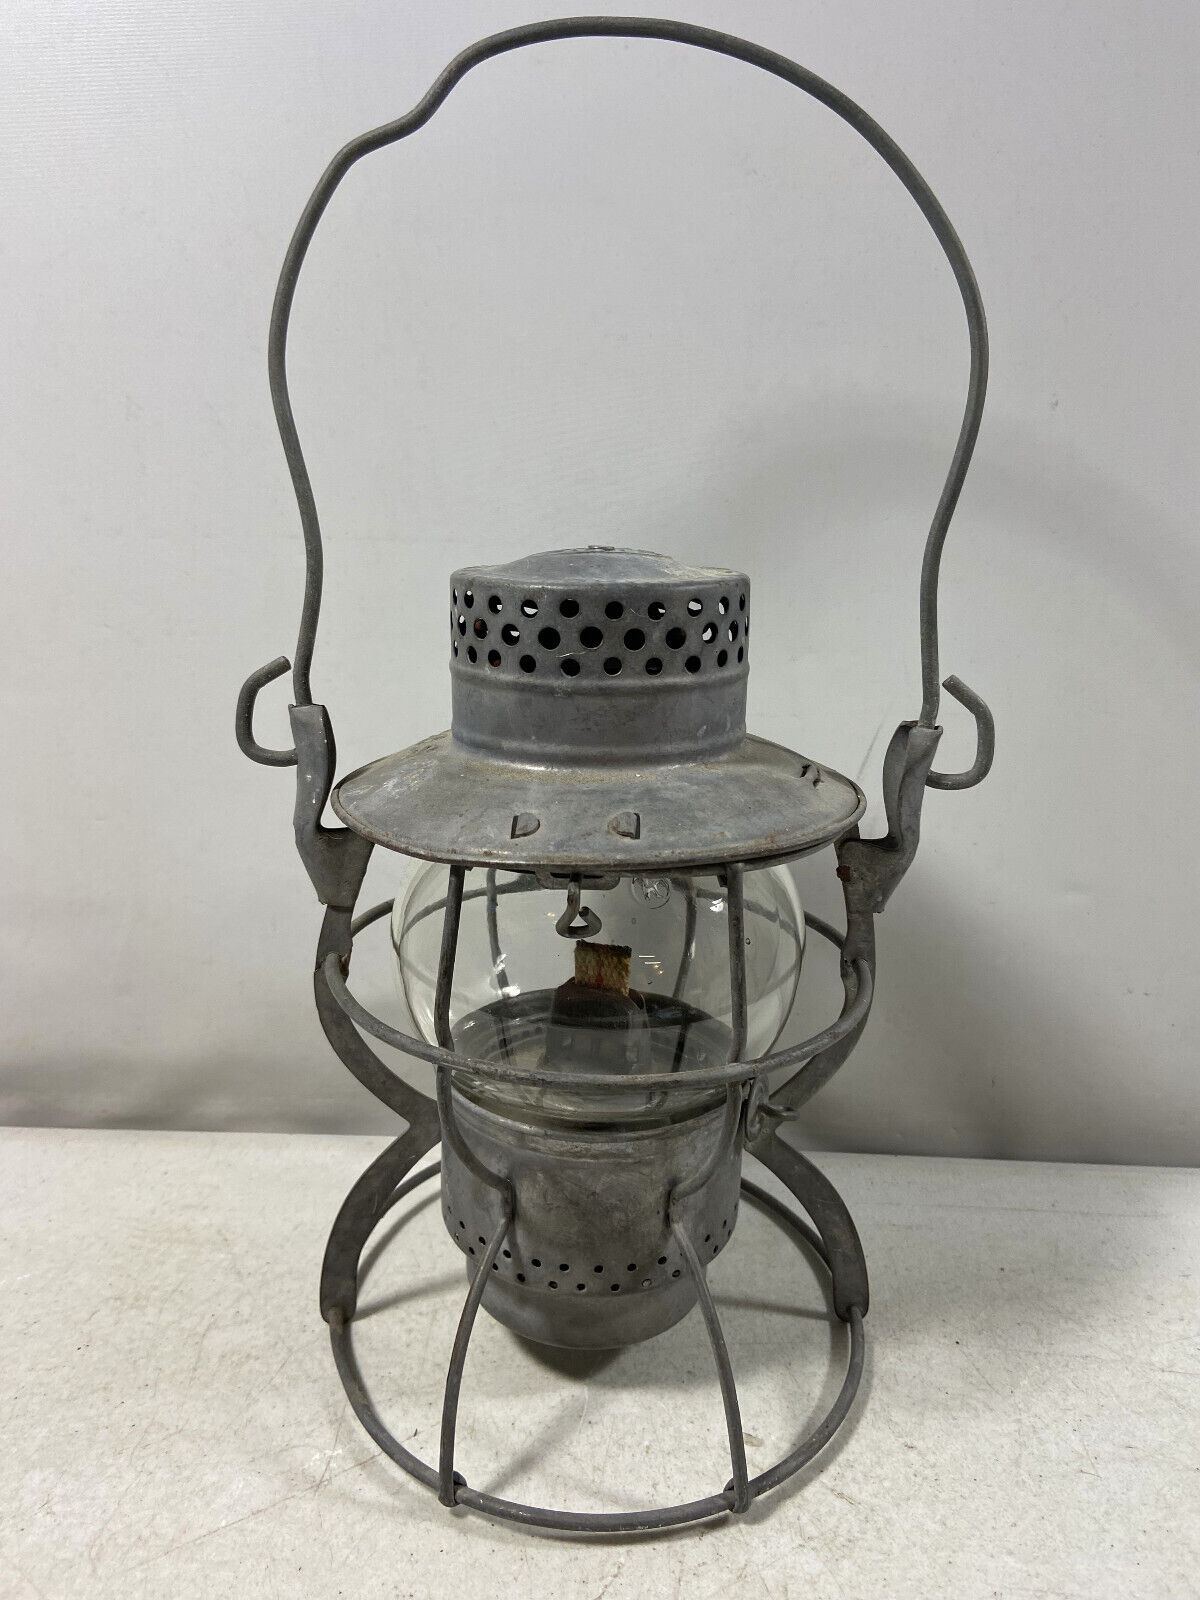 Dietz No.999 New York Railroad Systems Kerosene Lantern / Dietz Convex Burner